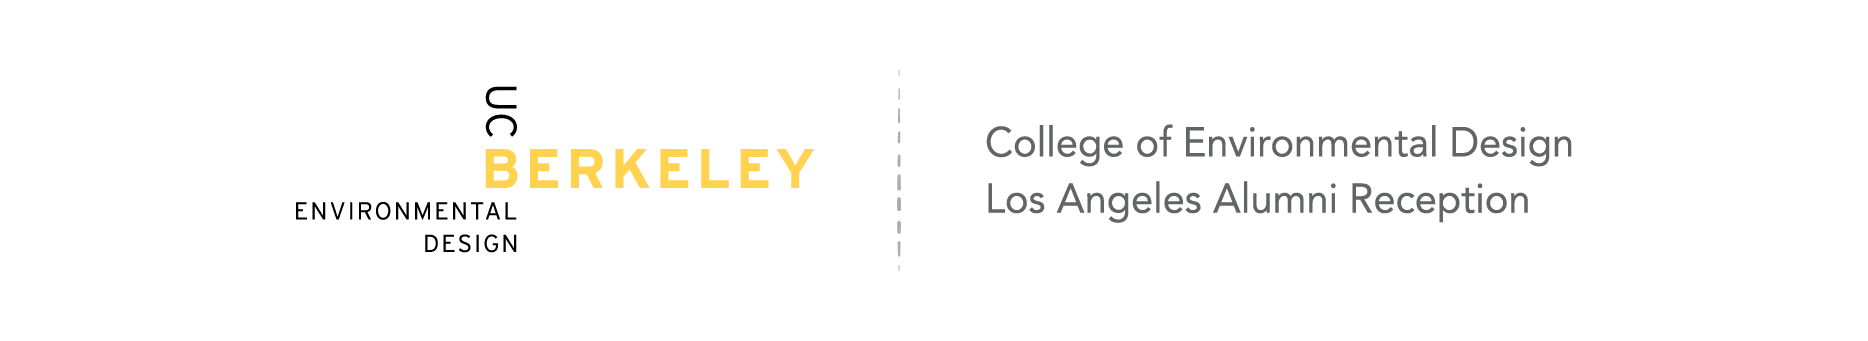 College of Environmental Design Los Angeles Alumni Reception